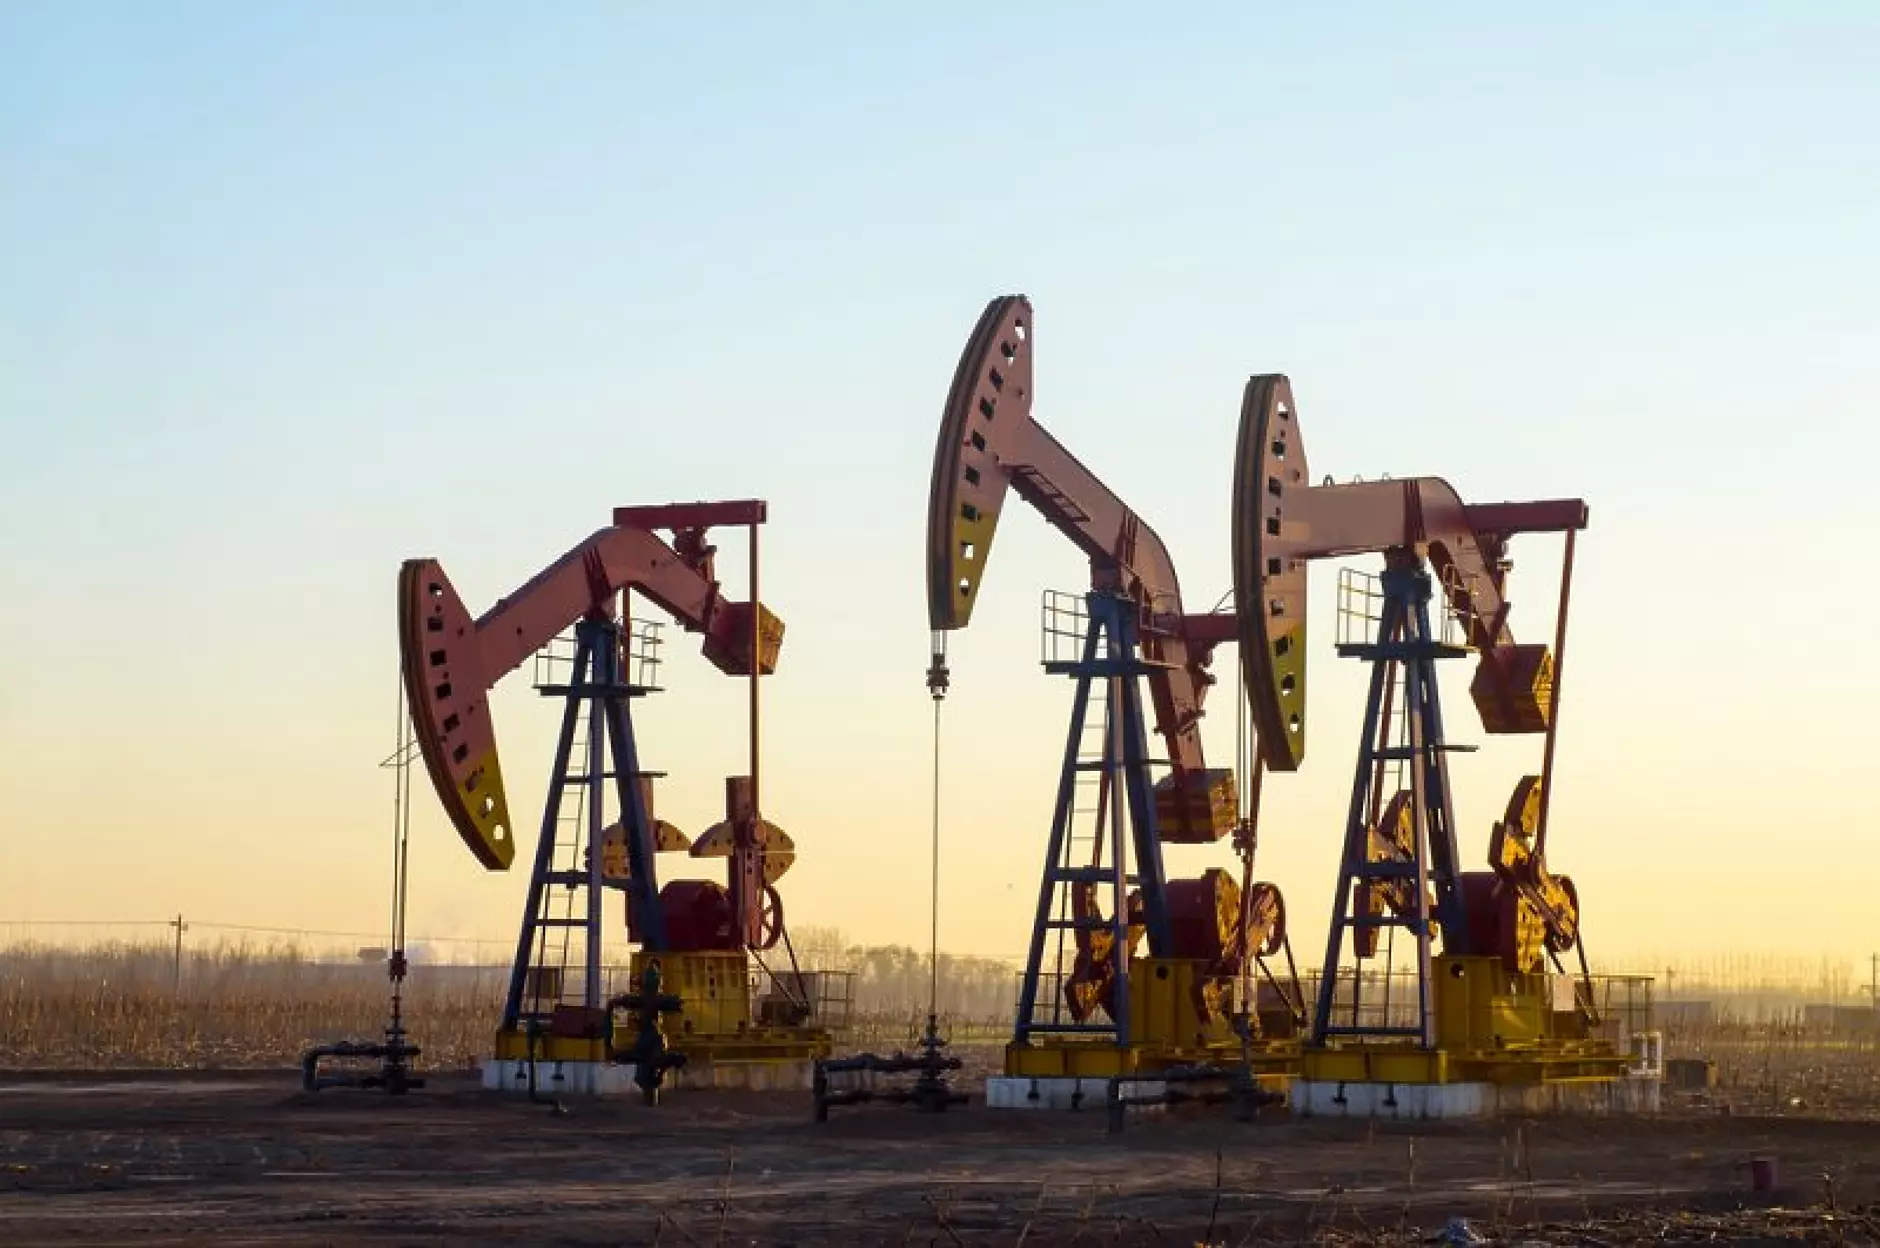 Цената на петрола пада поради страхове, че икономиката се забавя